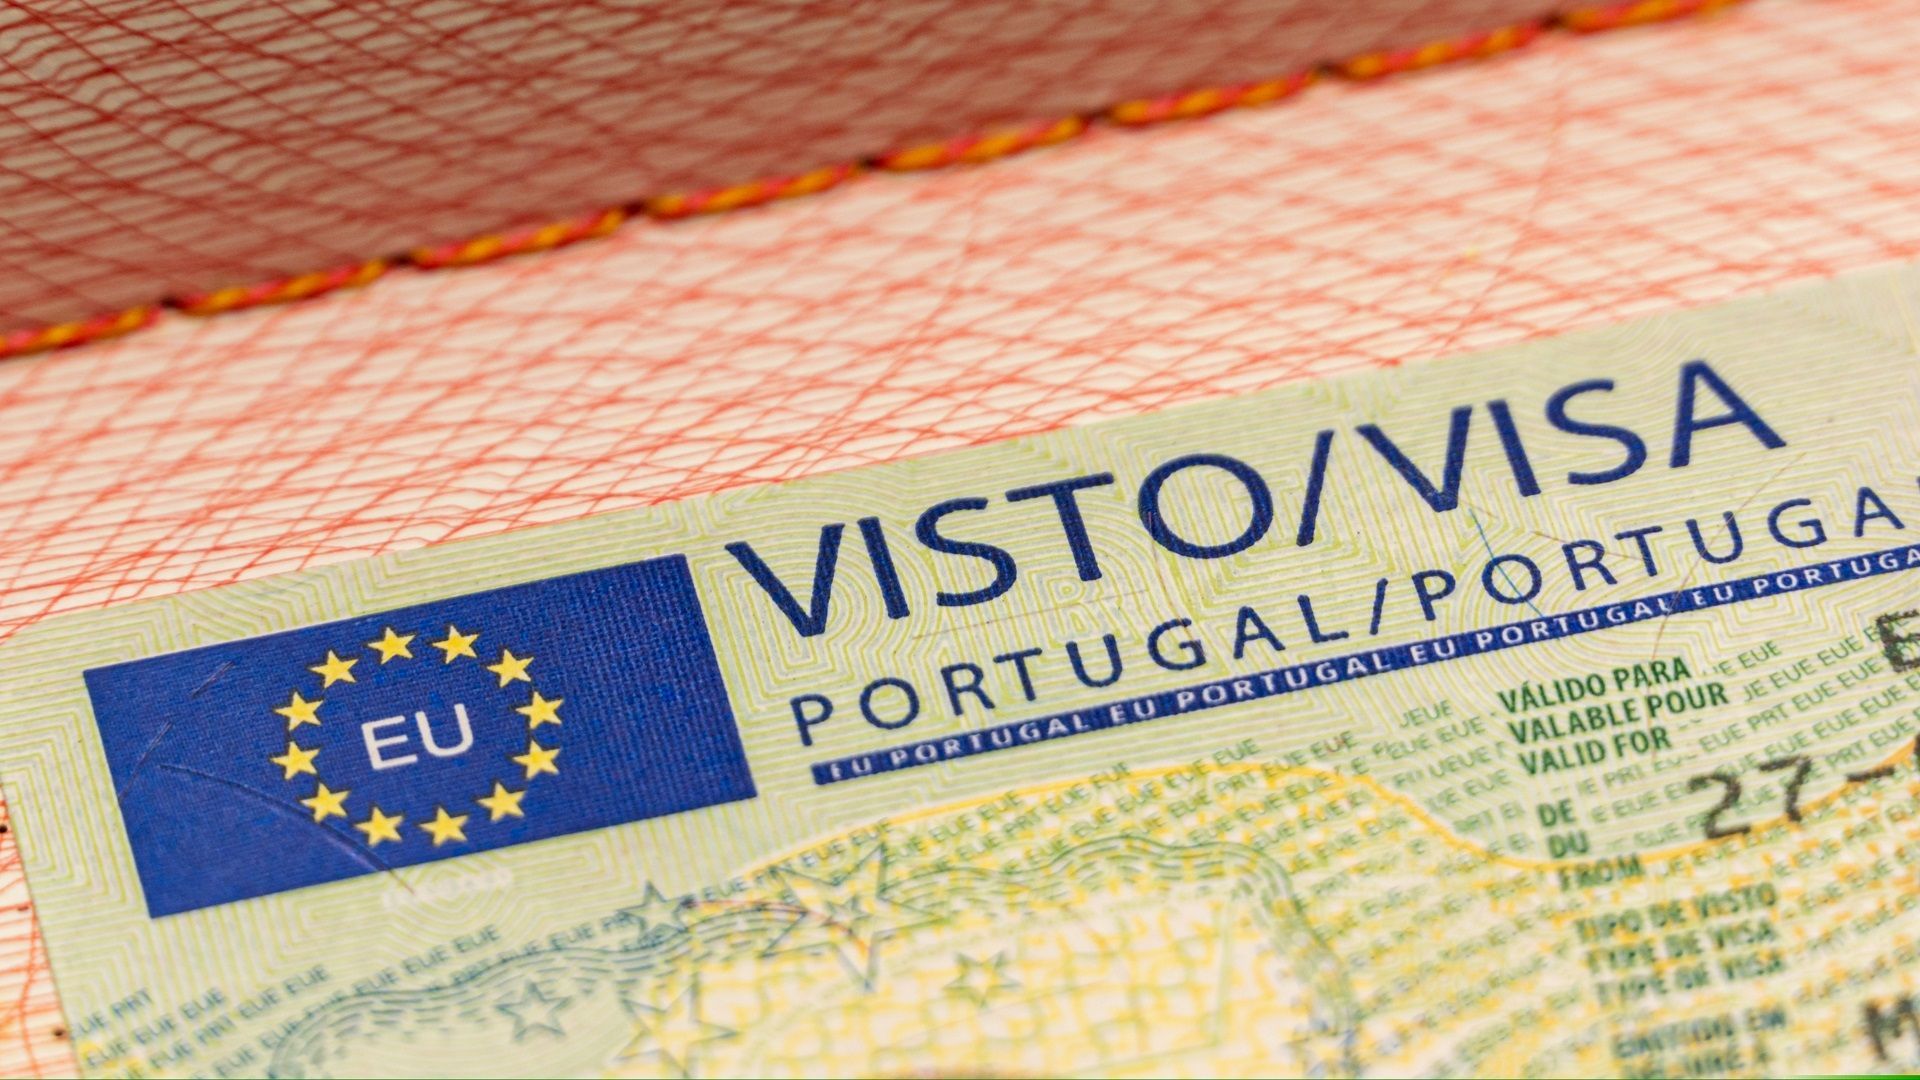 portugal visit visa application online